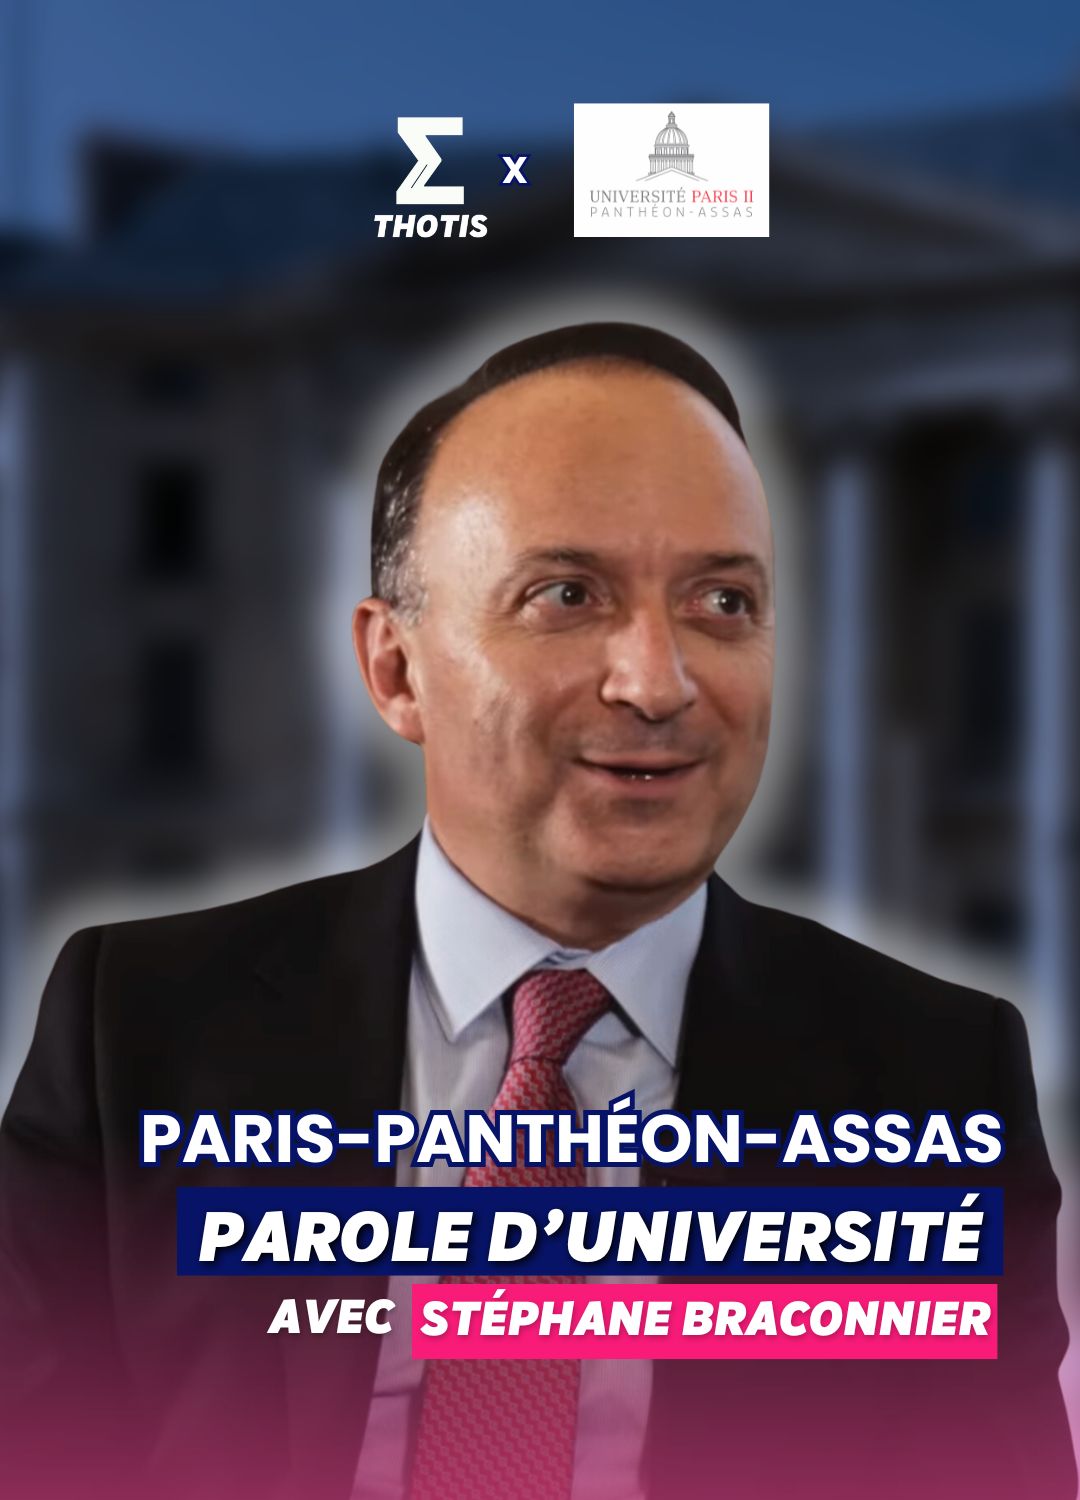 Parole d'université Paris-Panthéon-Assas avec Stéphane Braconnier